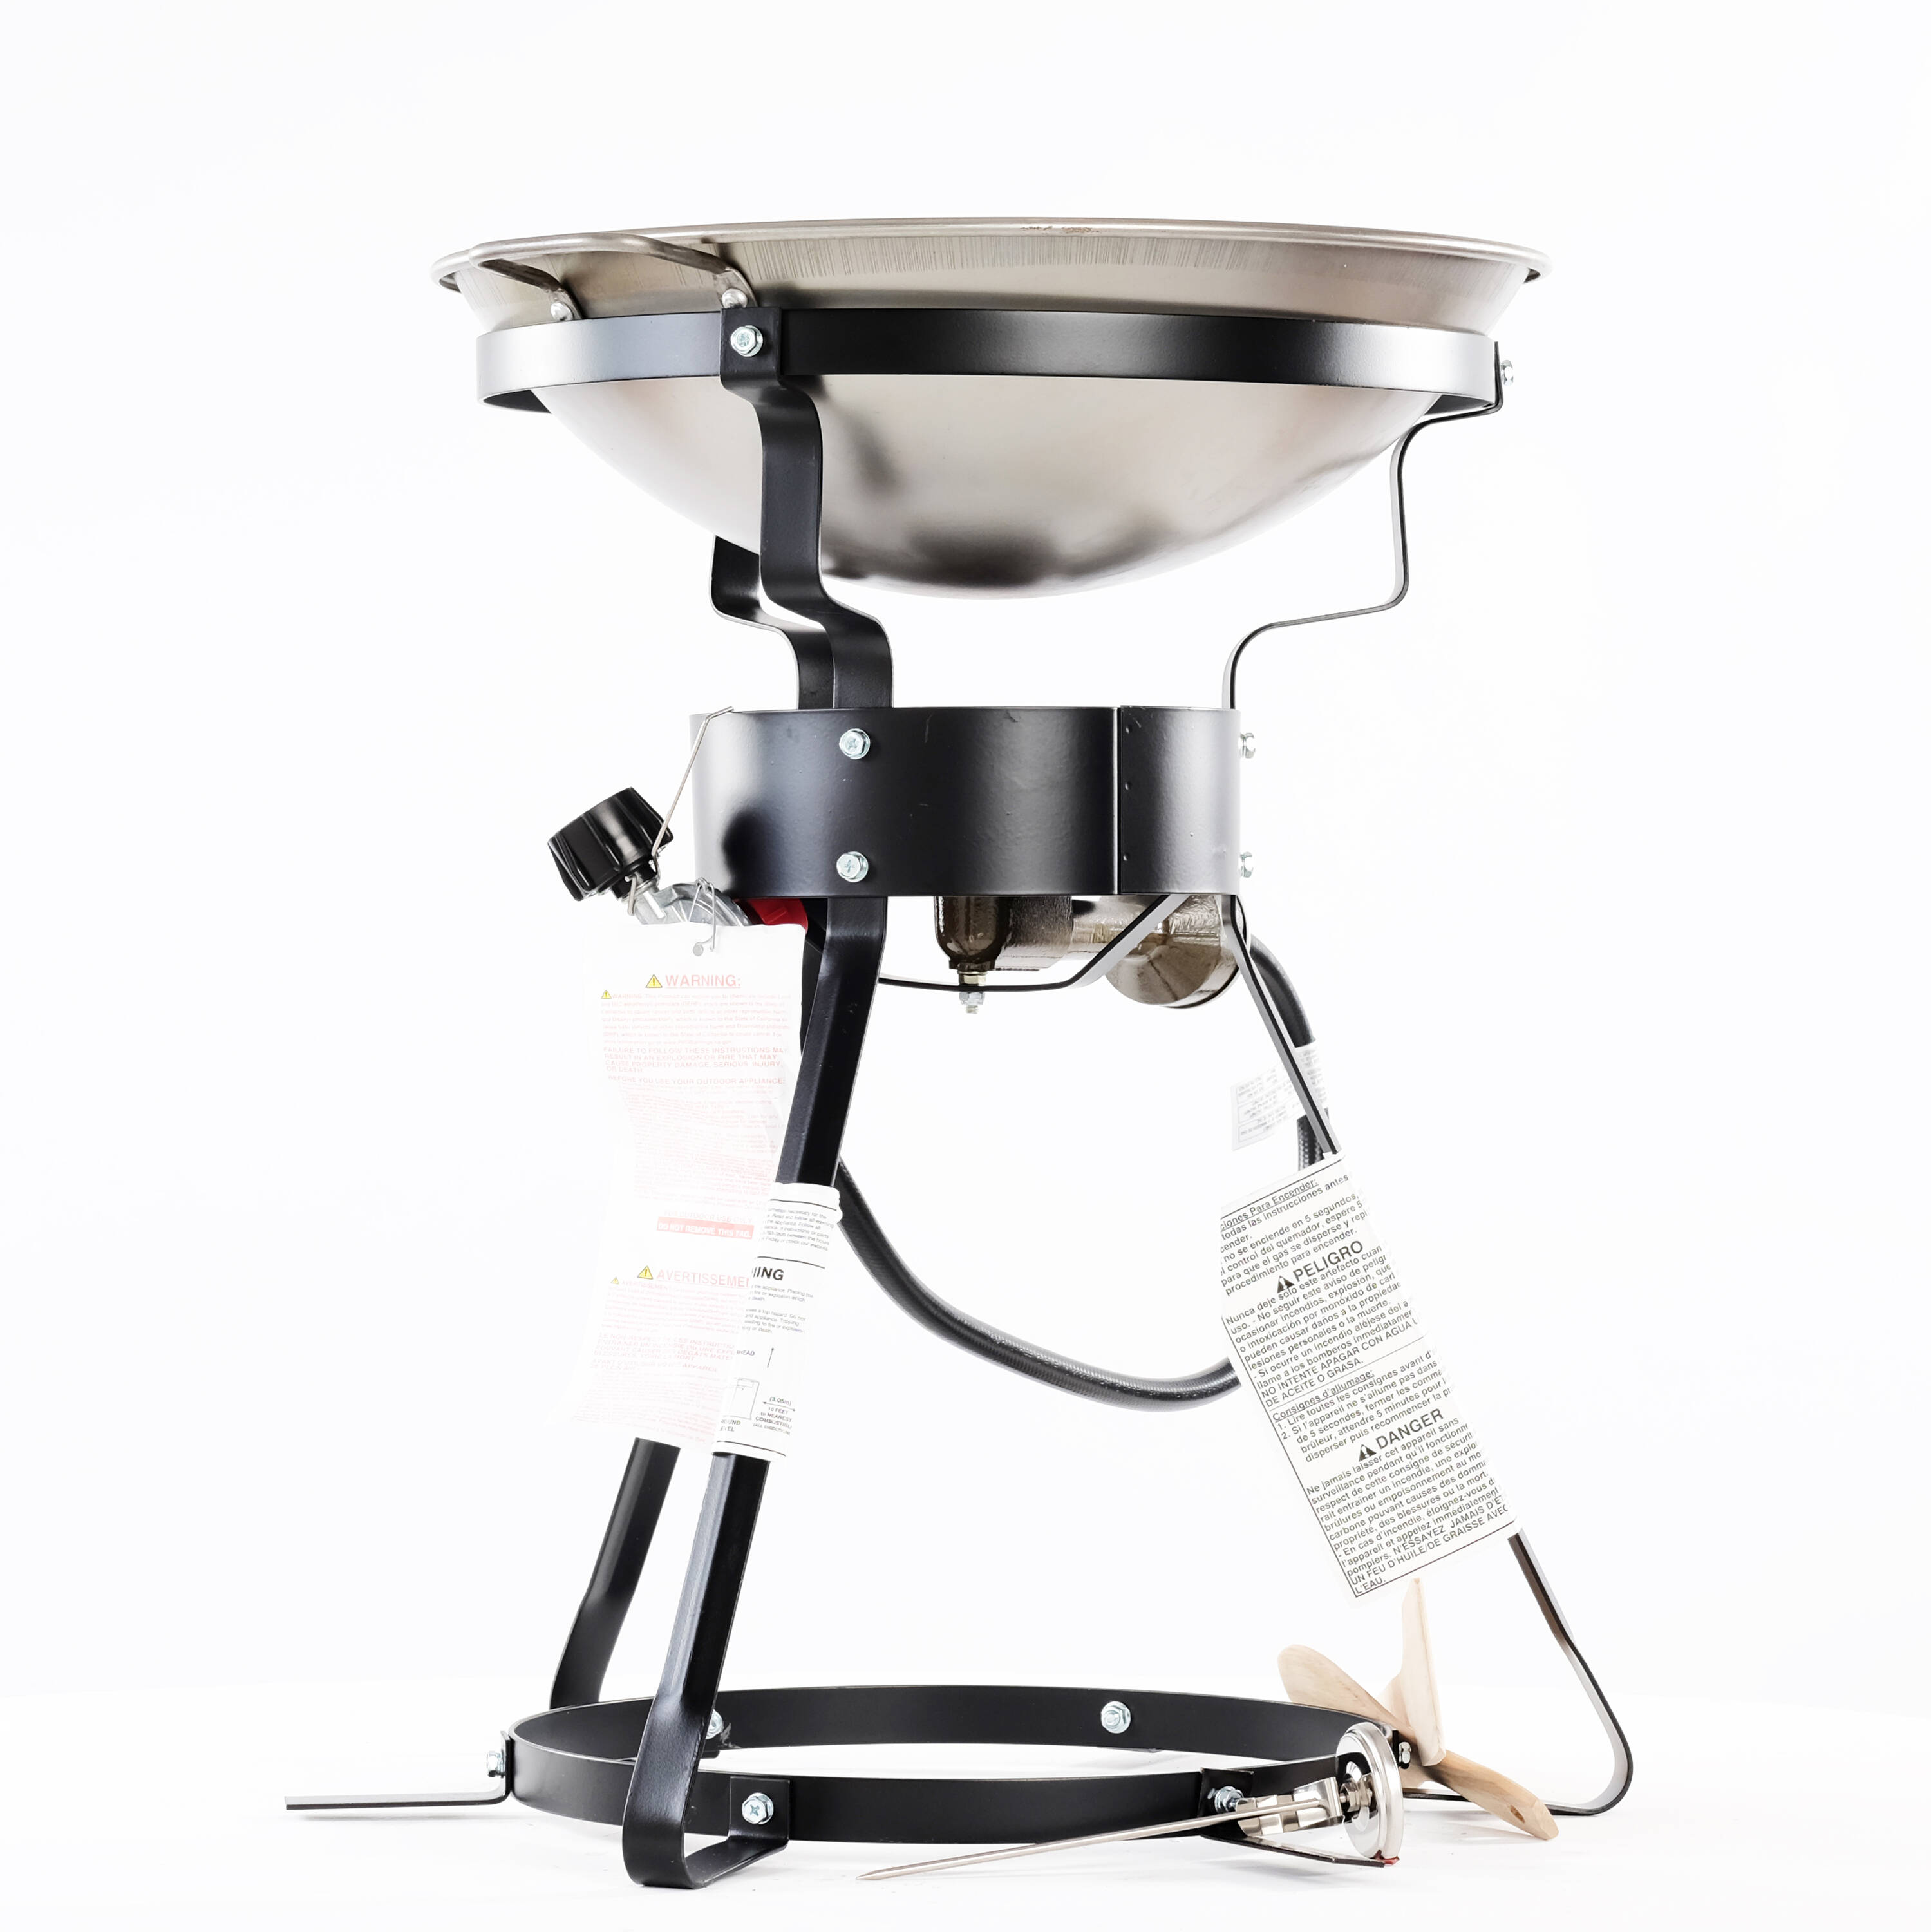 Glass propane gas stove WOK gas stove maker wok burner stool stool stove  stove 5